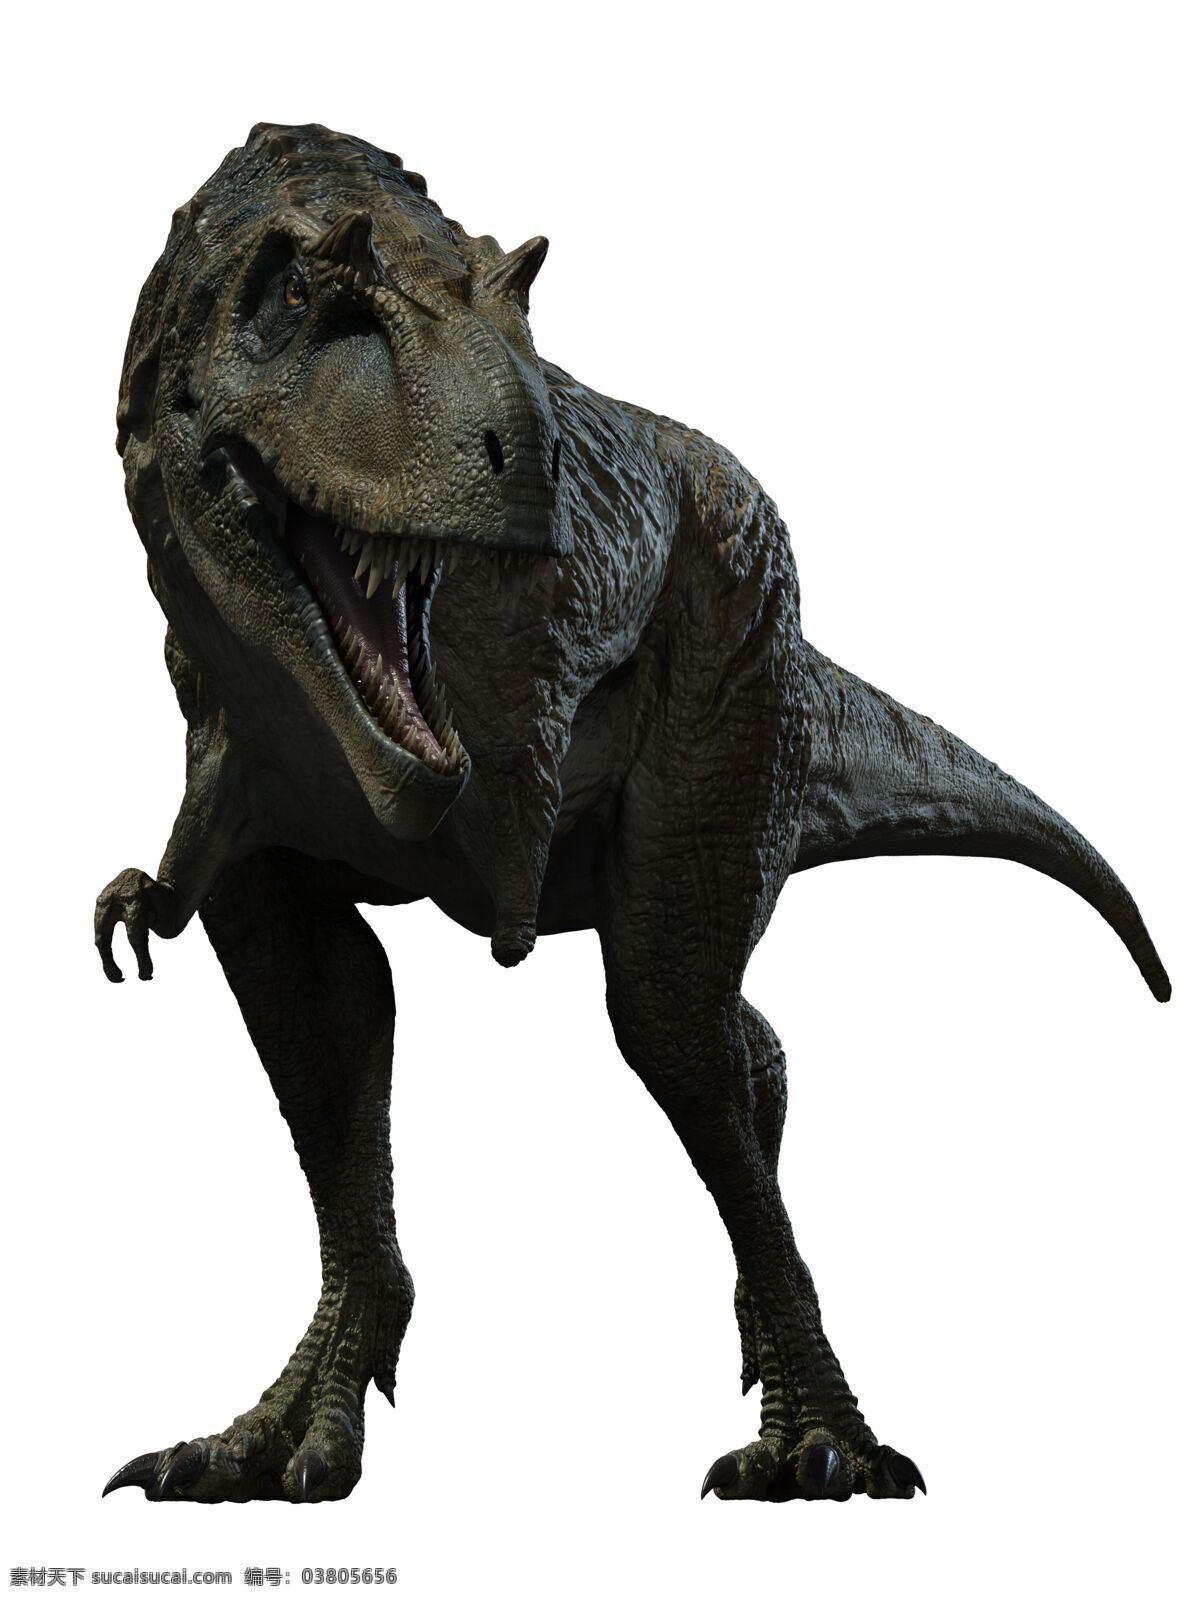 霸王龙 食肉龙 雷克斯暴龙 侏罗纪 恐龙 白垩世界 暴龙 猛兽 史前生物 生物世界 白色